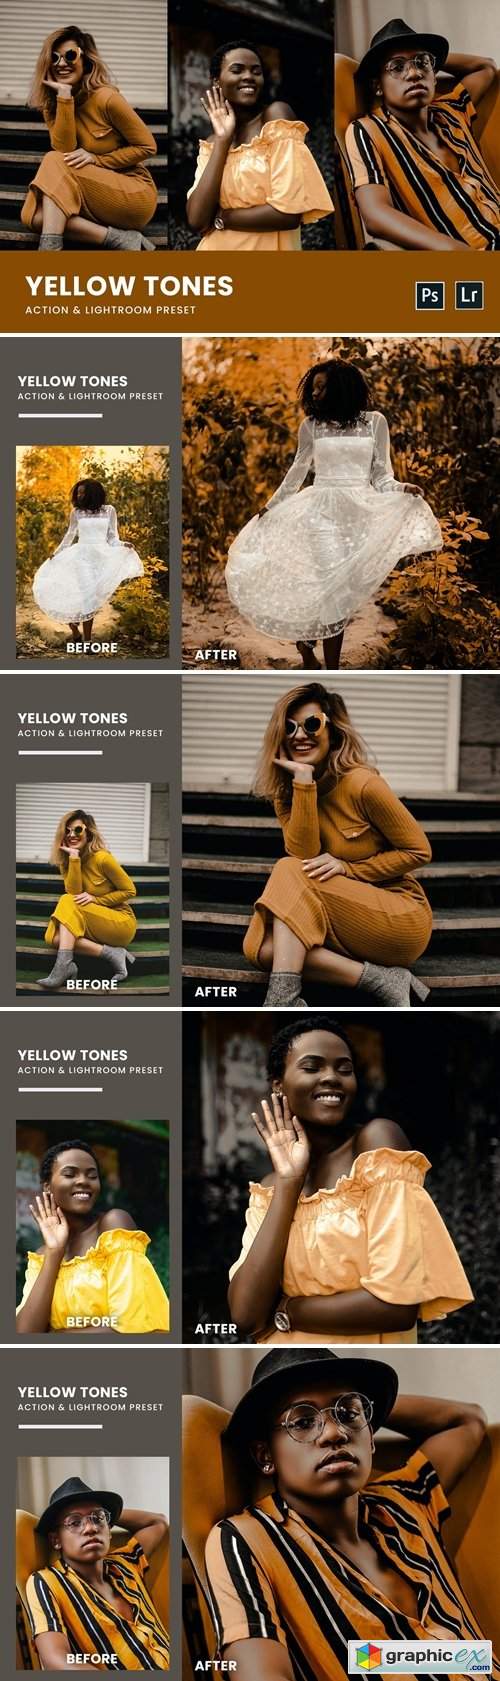  Yellow Tones Photoshop Action & Lightrom Presets 